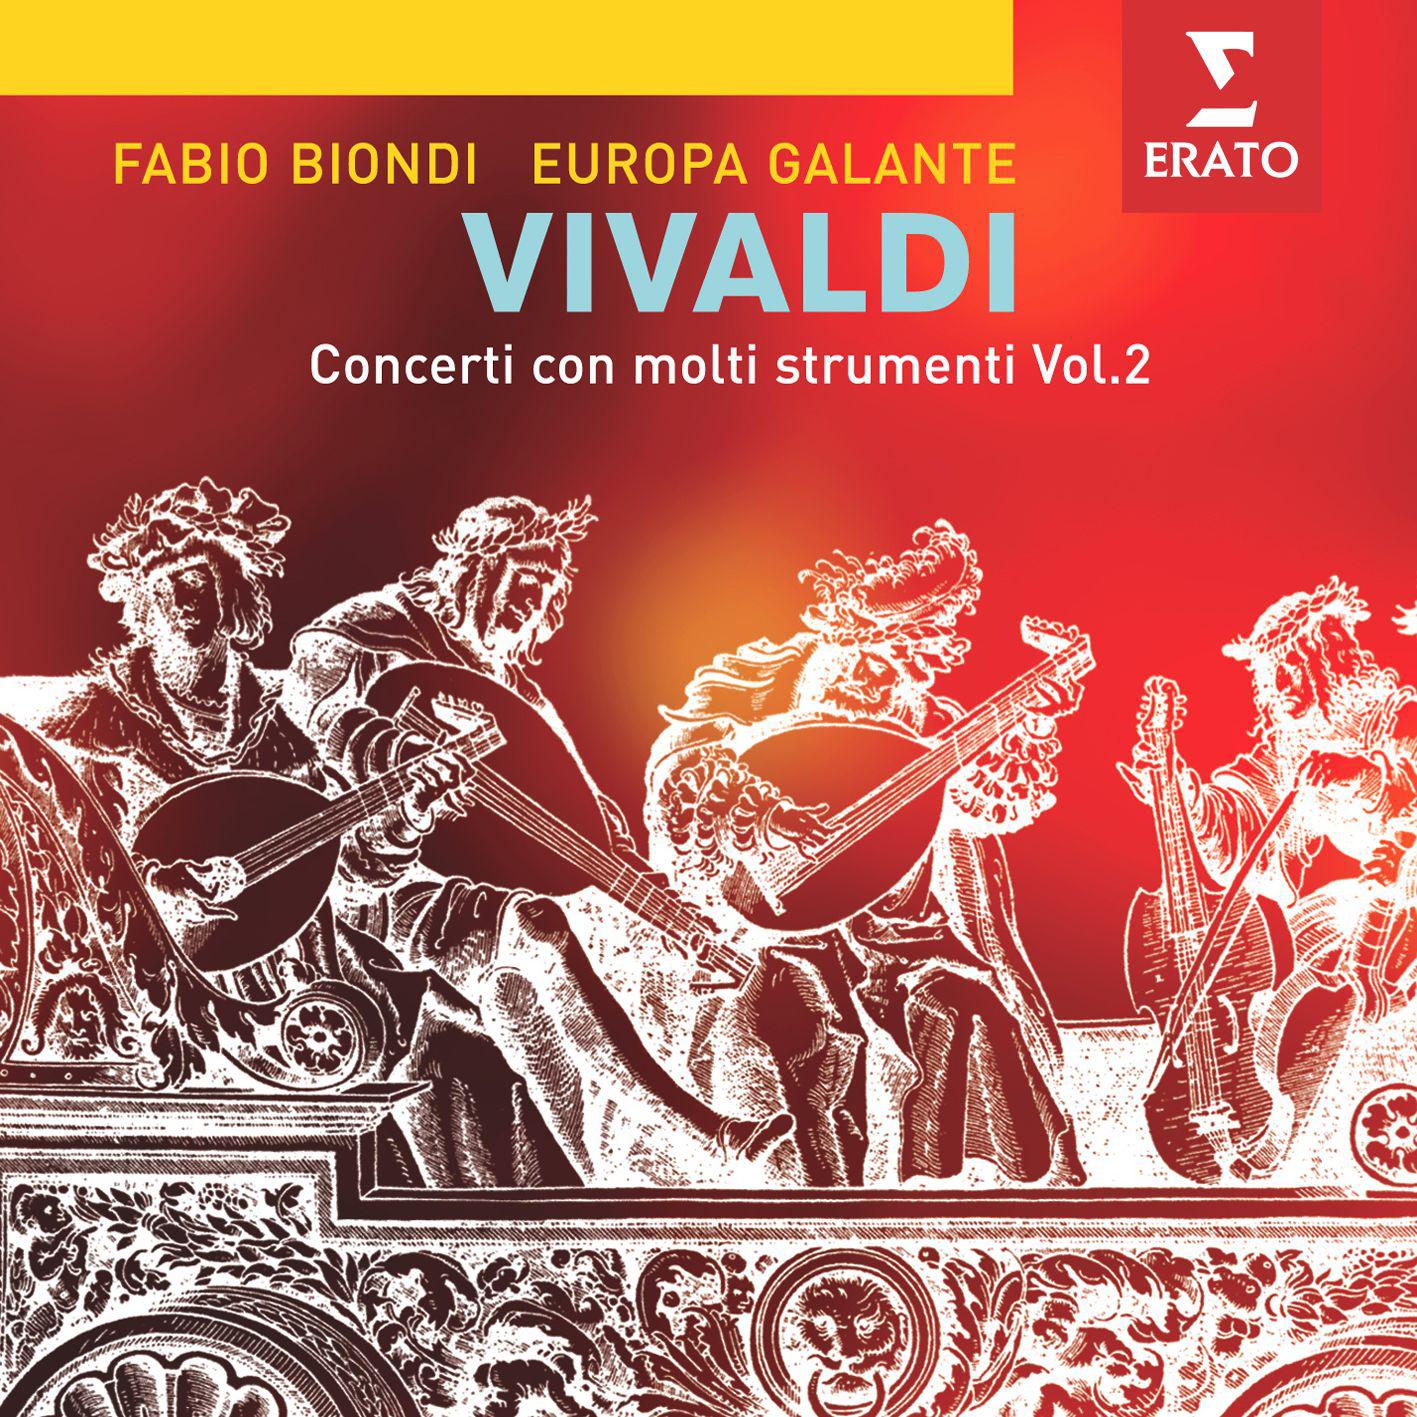 Concerto for solo violin, 2 cellos & strings in C major RV561: Largo